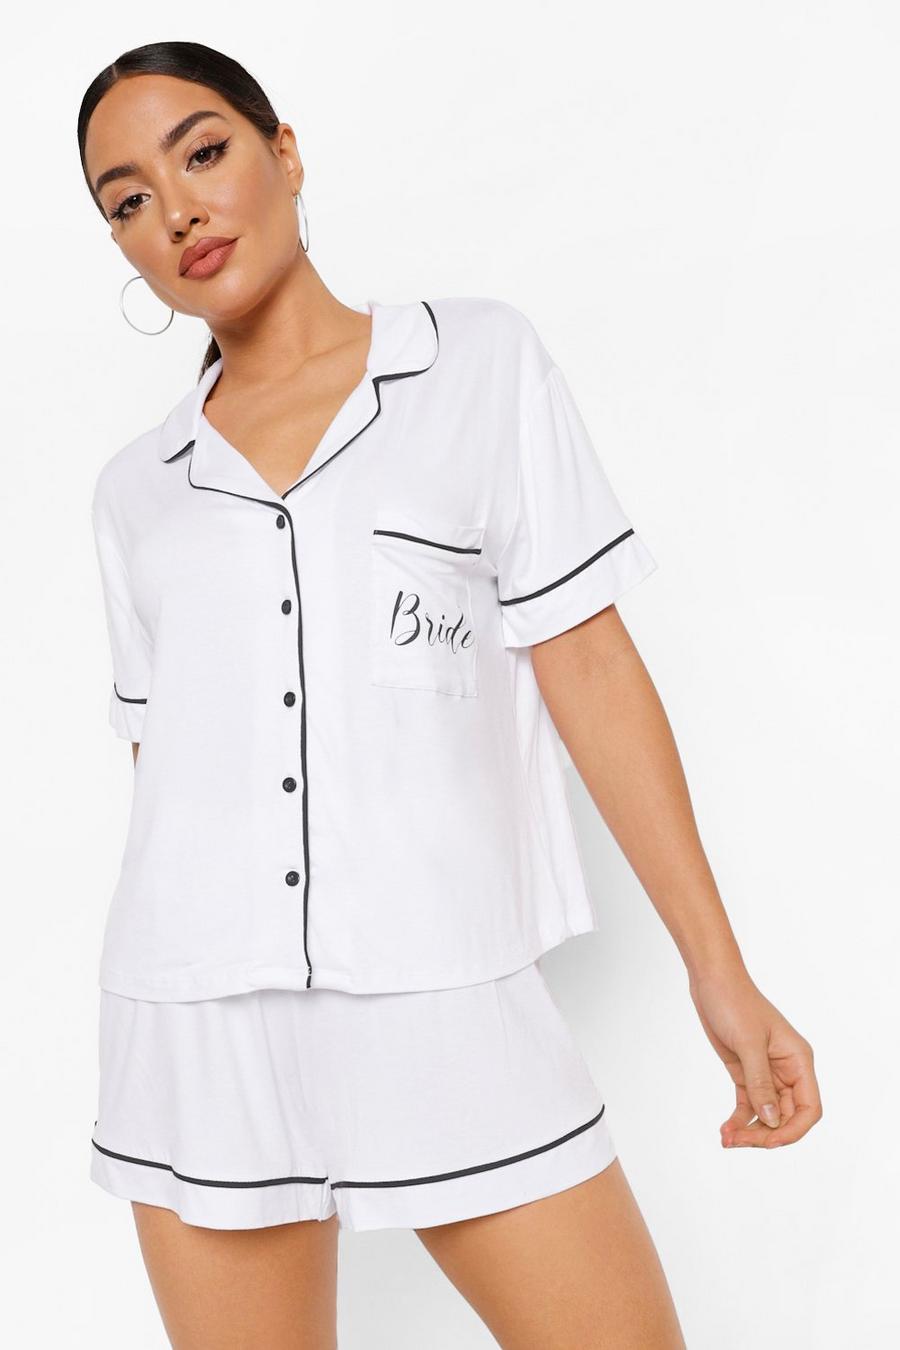 Bride Jersey Pyjama-Set mit Knopfleiste, Weiß white